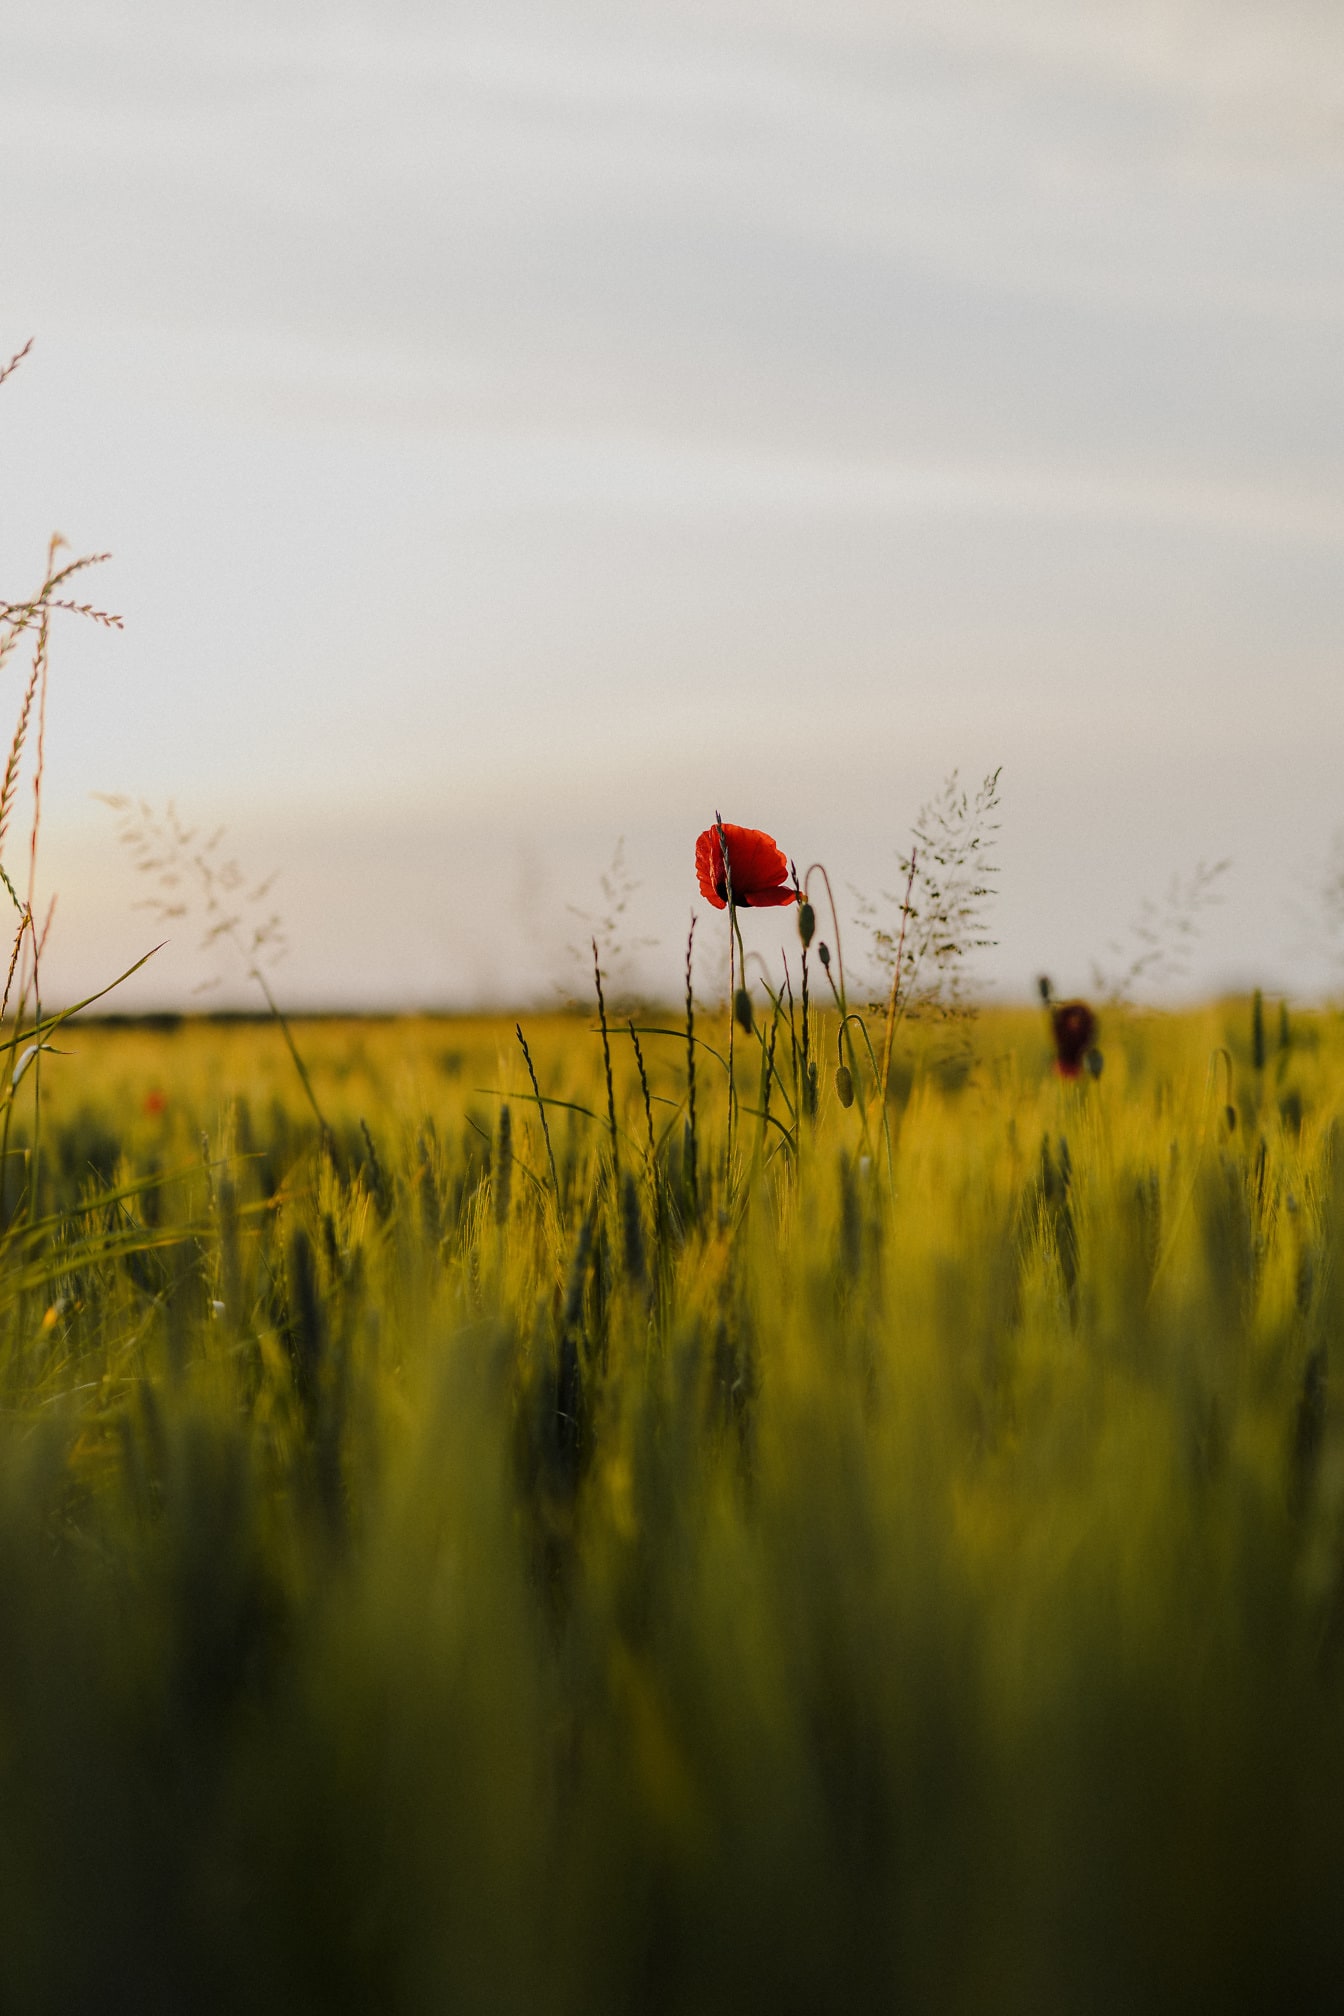 Flor de adormidera de opio de color rojo oscuro en un campo de trigo amarillo verde